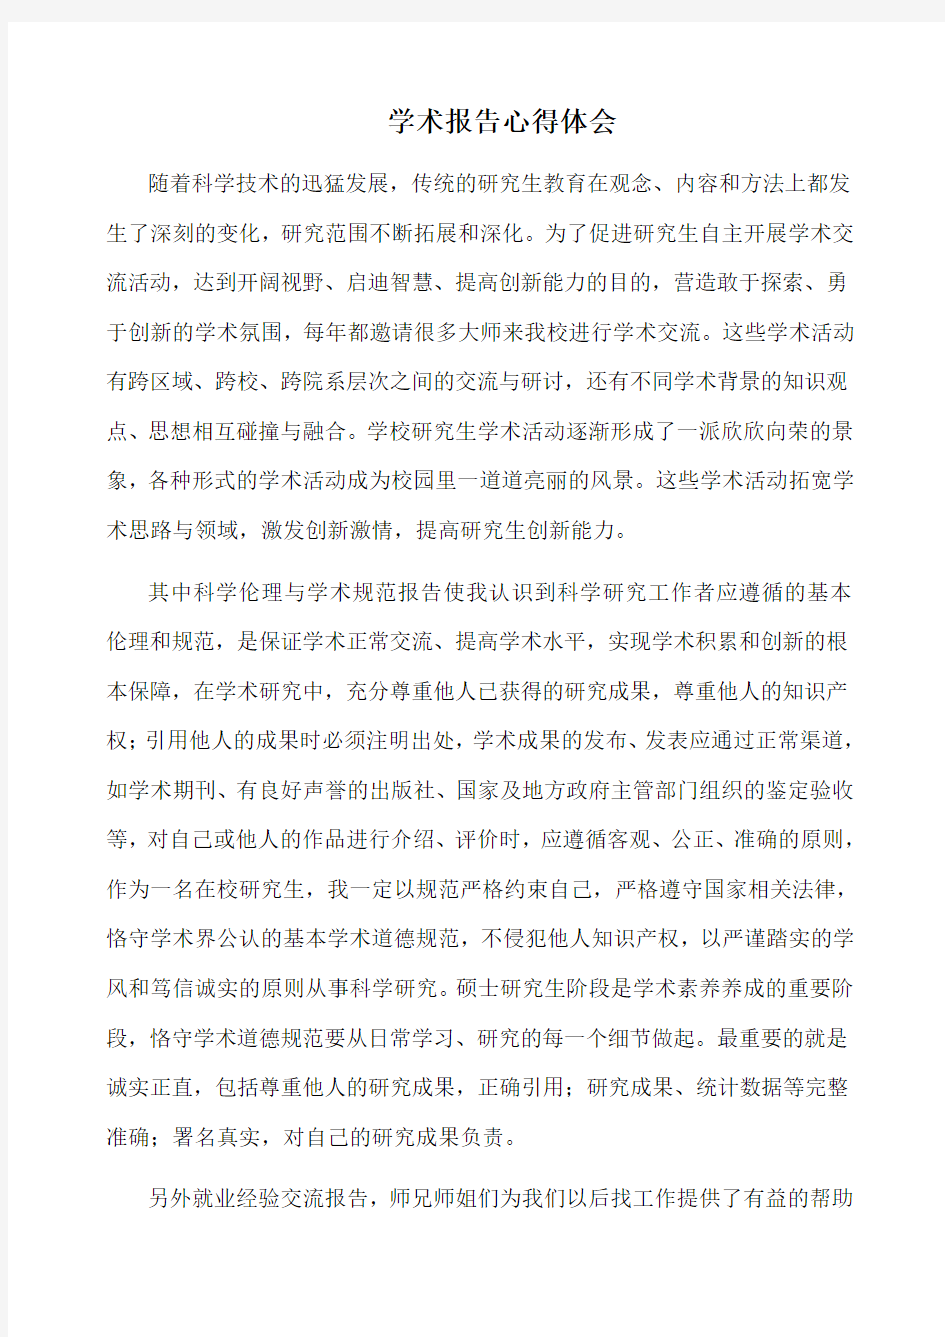 北京工业大学研究生参加学术活动考核表_2012版 (1)